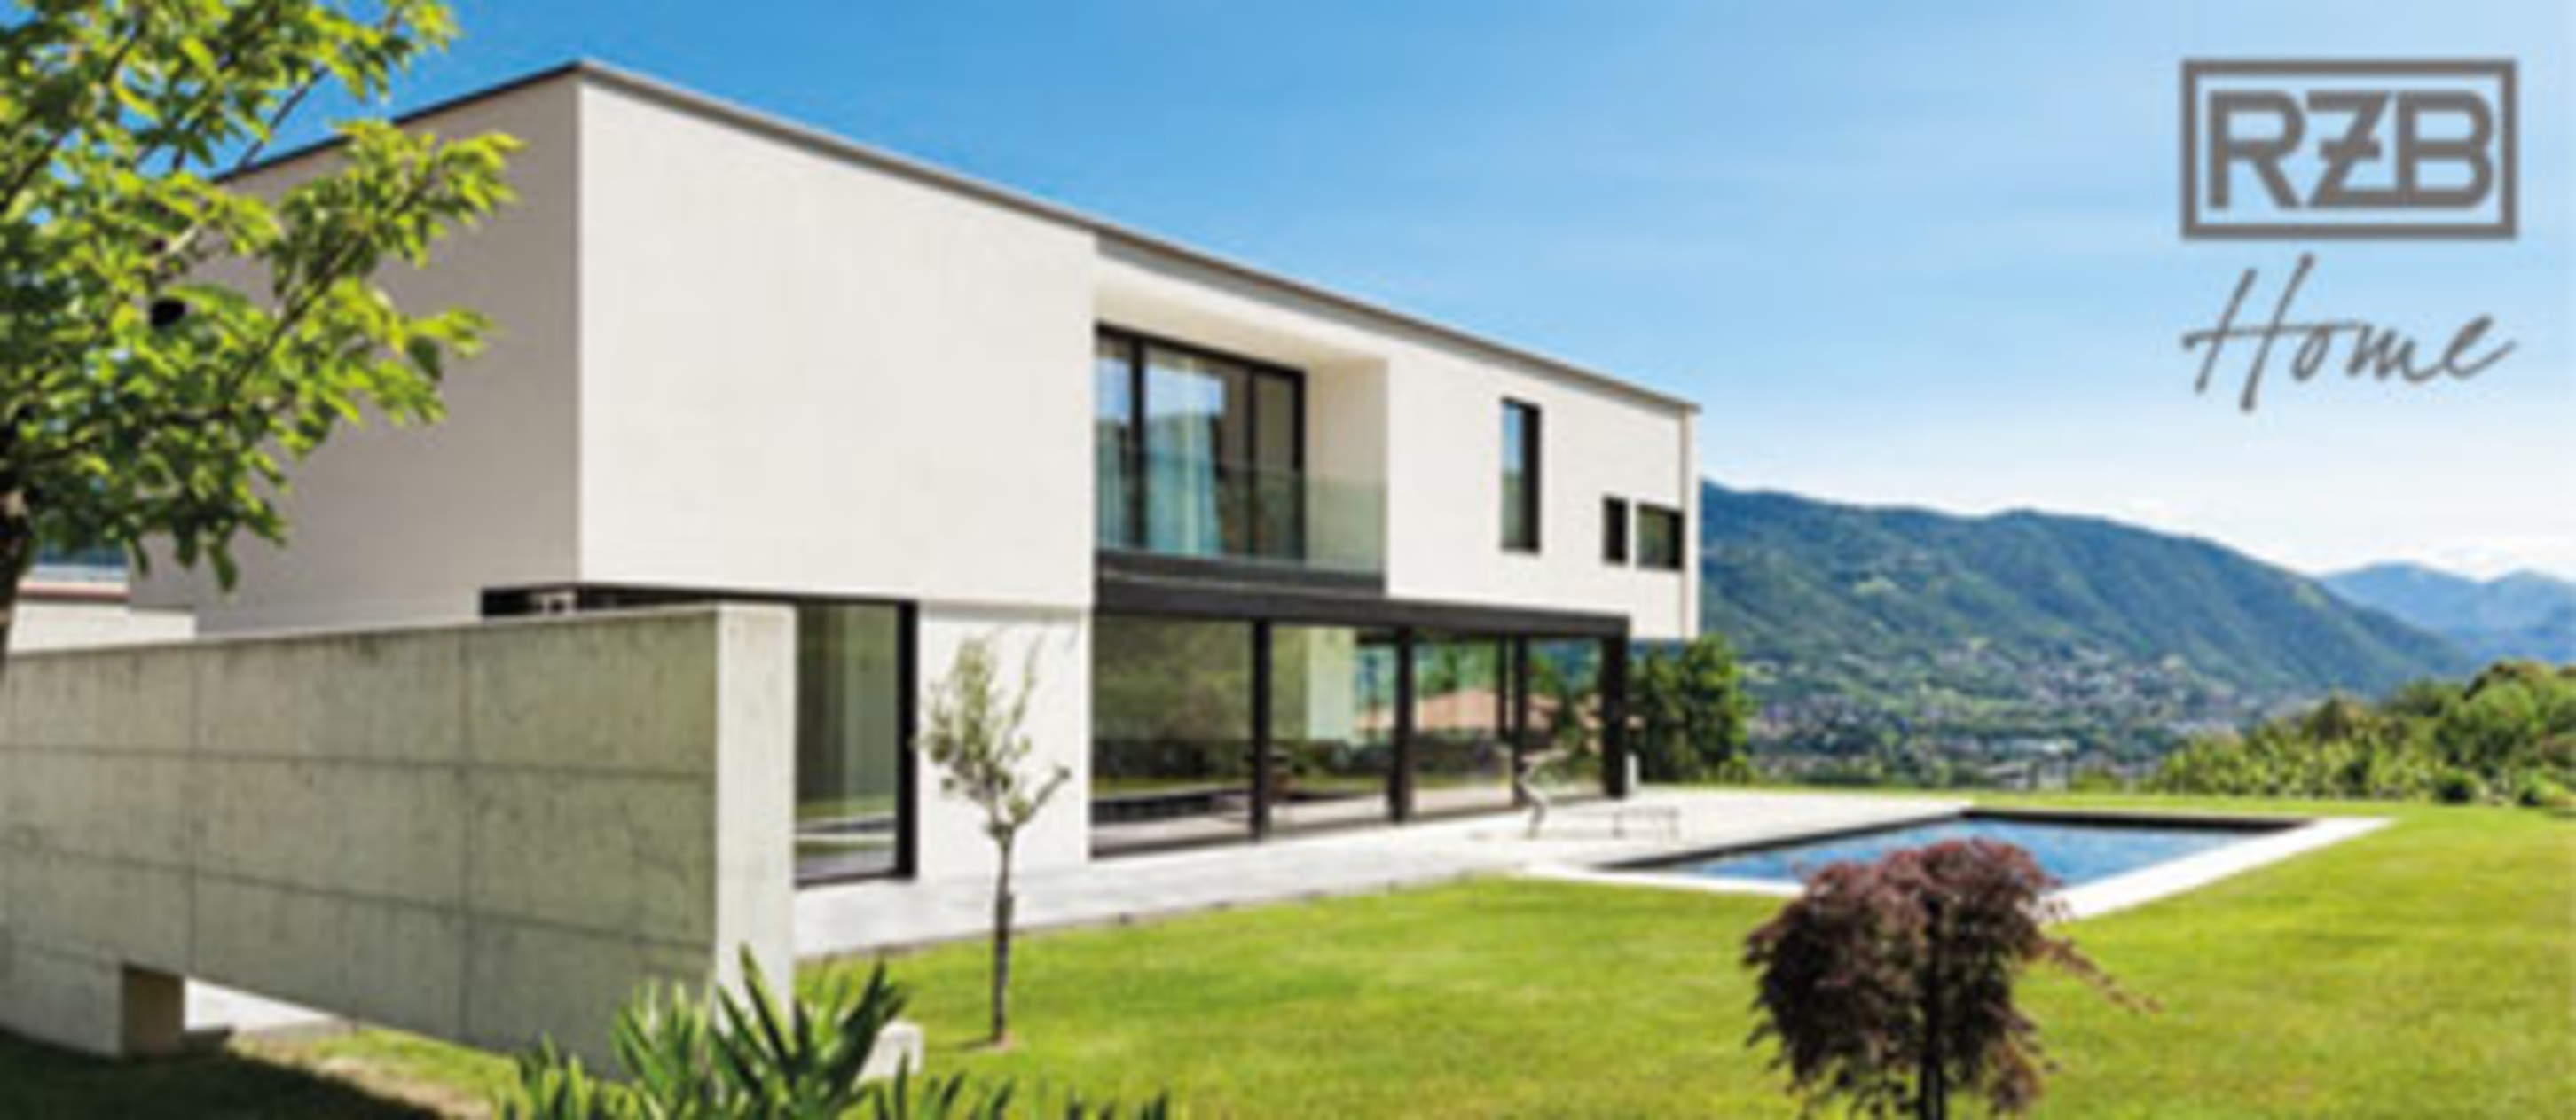 RZB Home + Basic bei Möller Gebäudetechnik GmbH in Niestetal